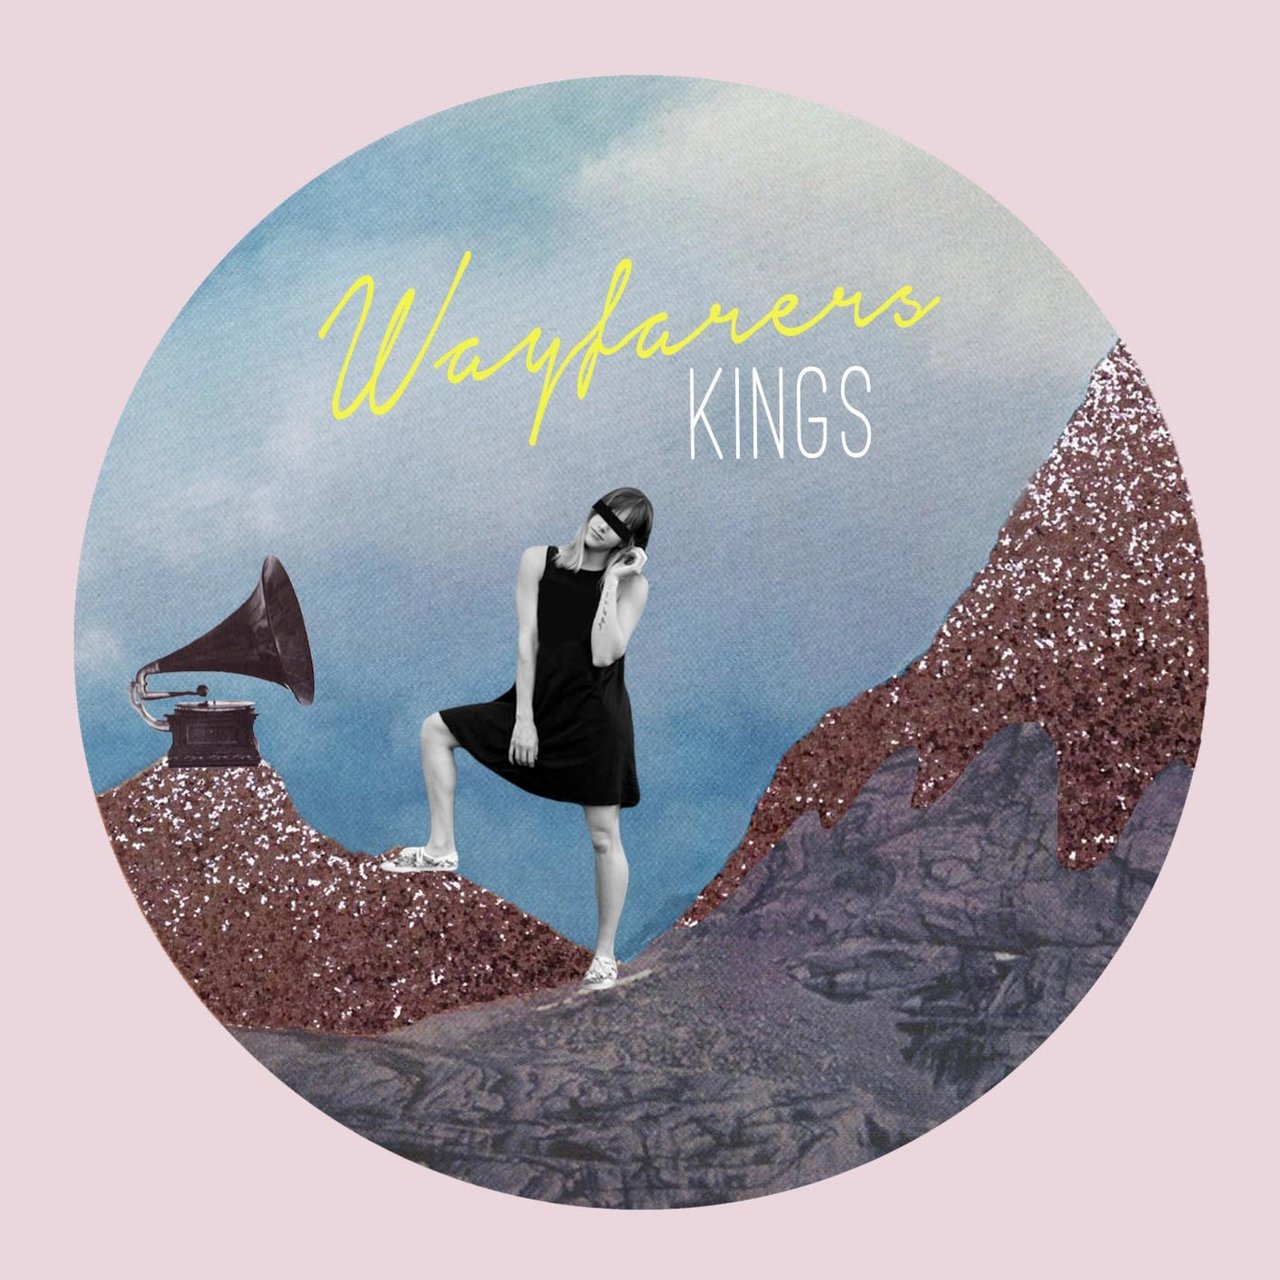 Wayfarers Kings cover artwork